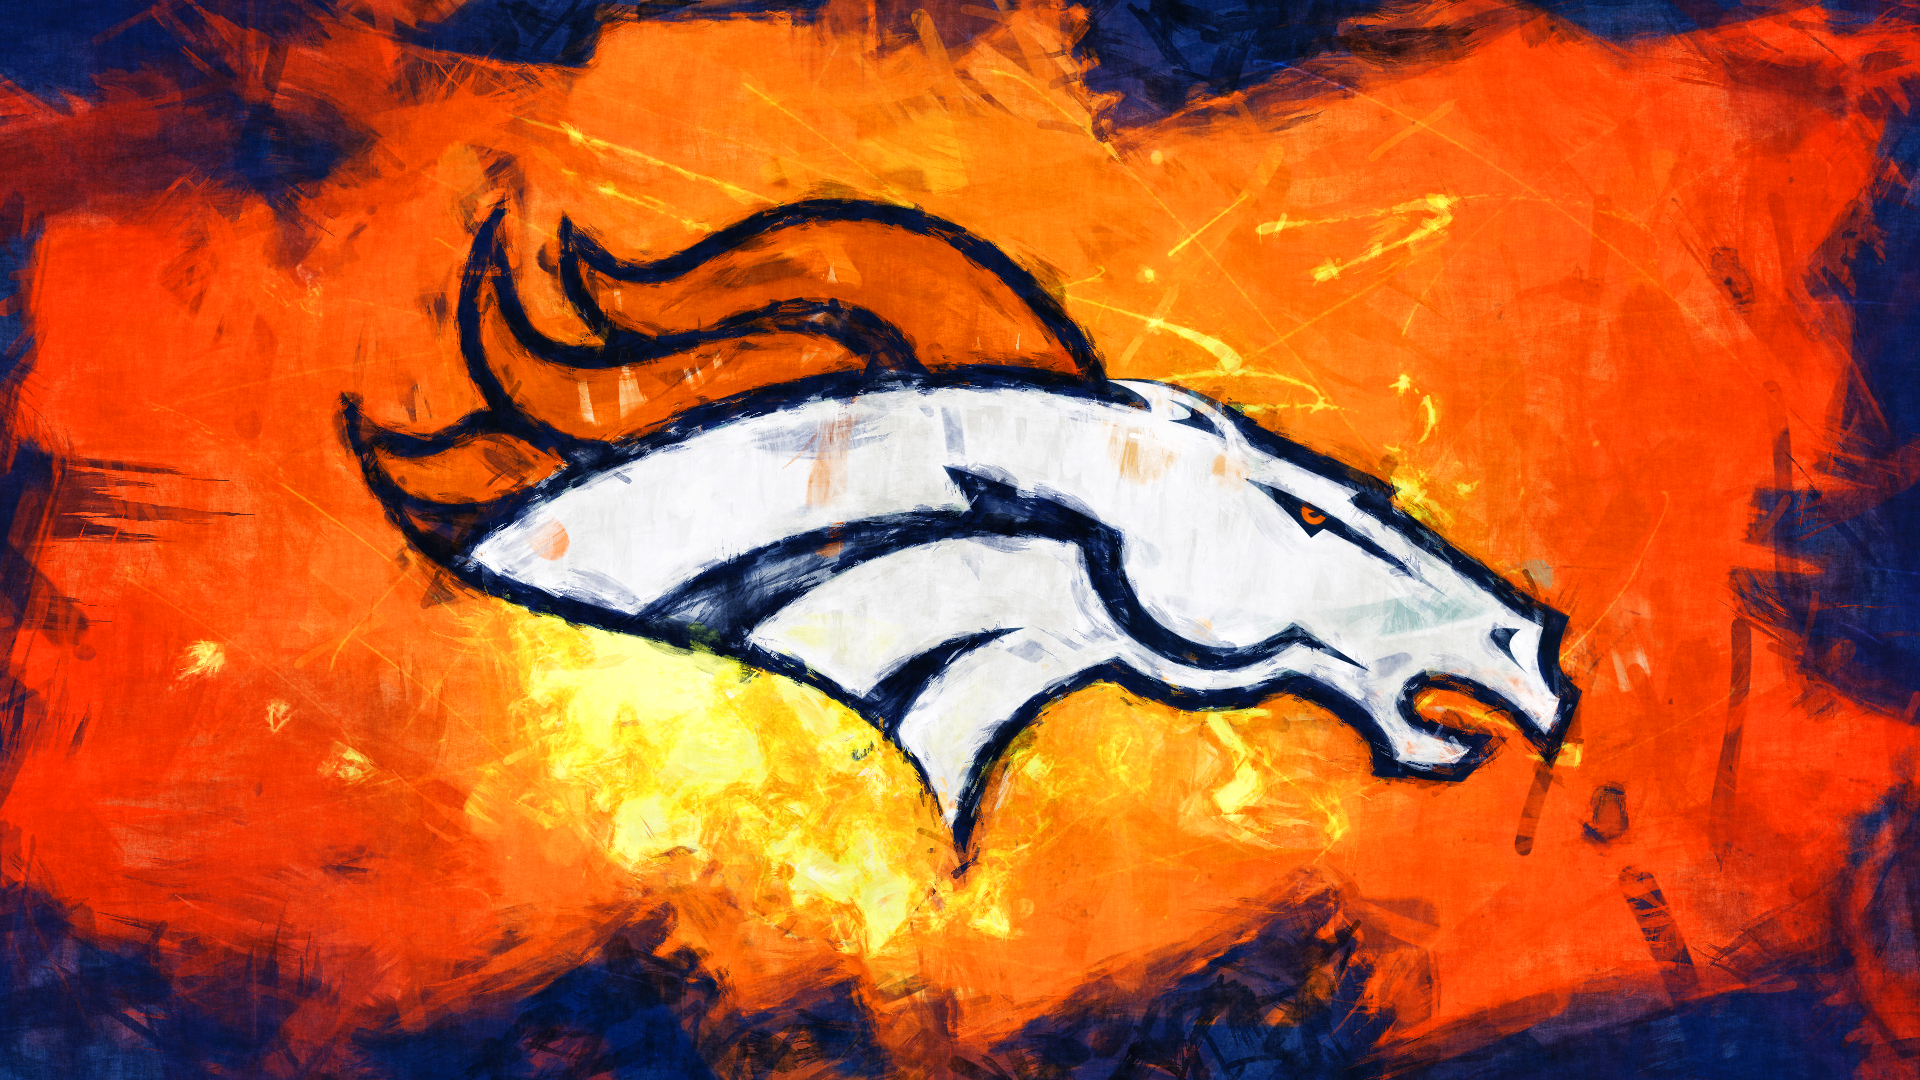 Broncos Denver Broncos Super Bowl 2014 Pinterest 1920x1080